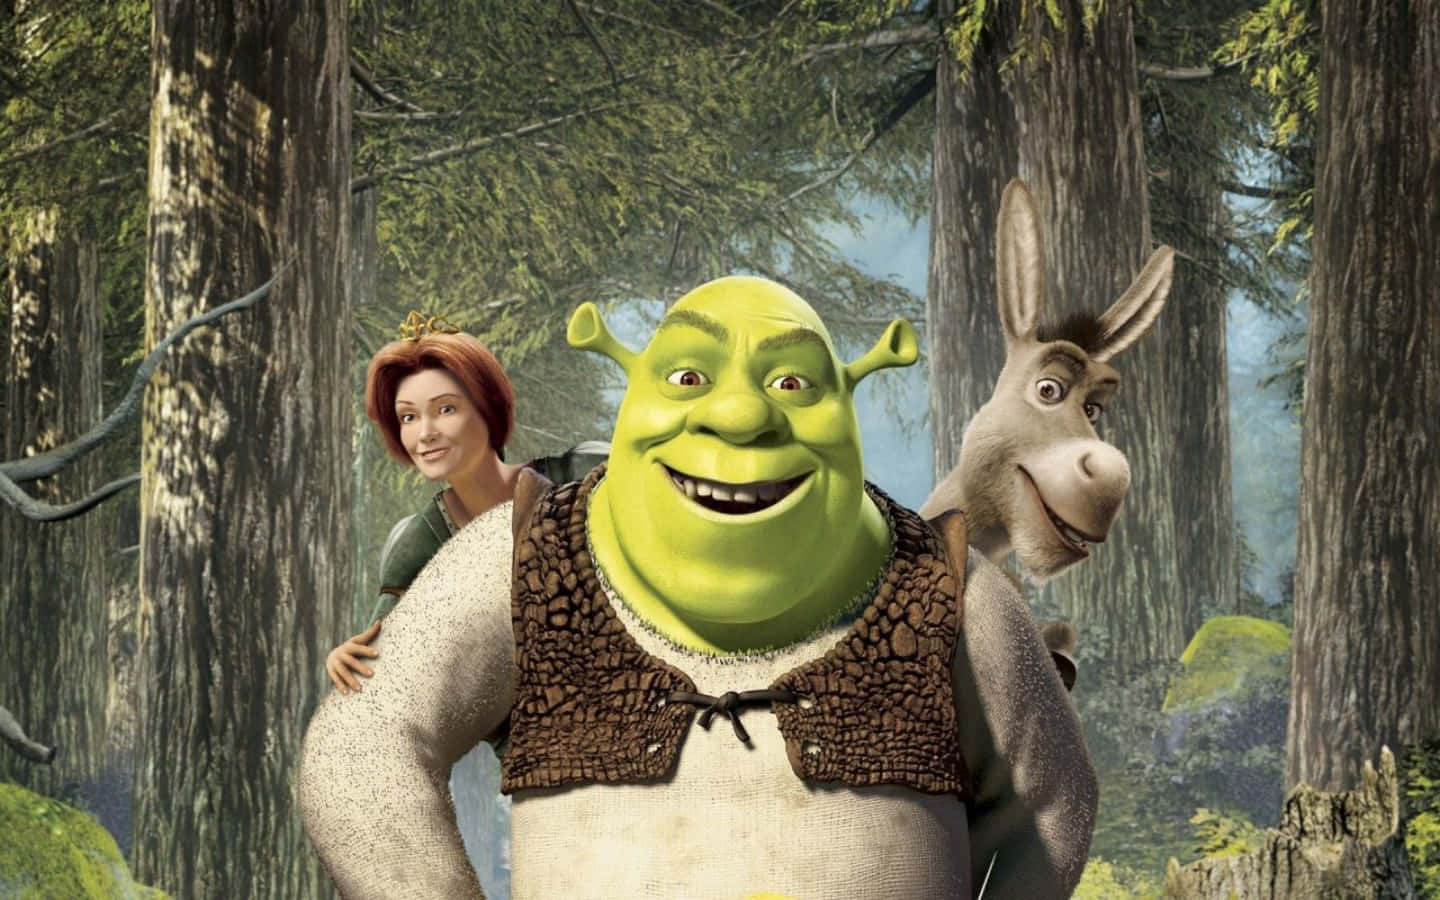 Shrek The Movie Poster Wallpaper